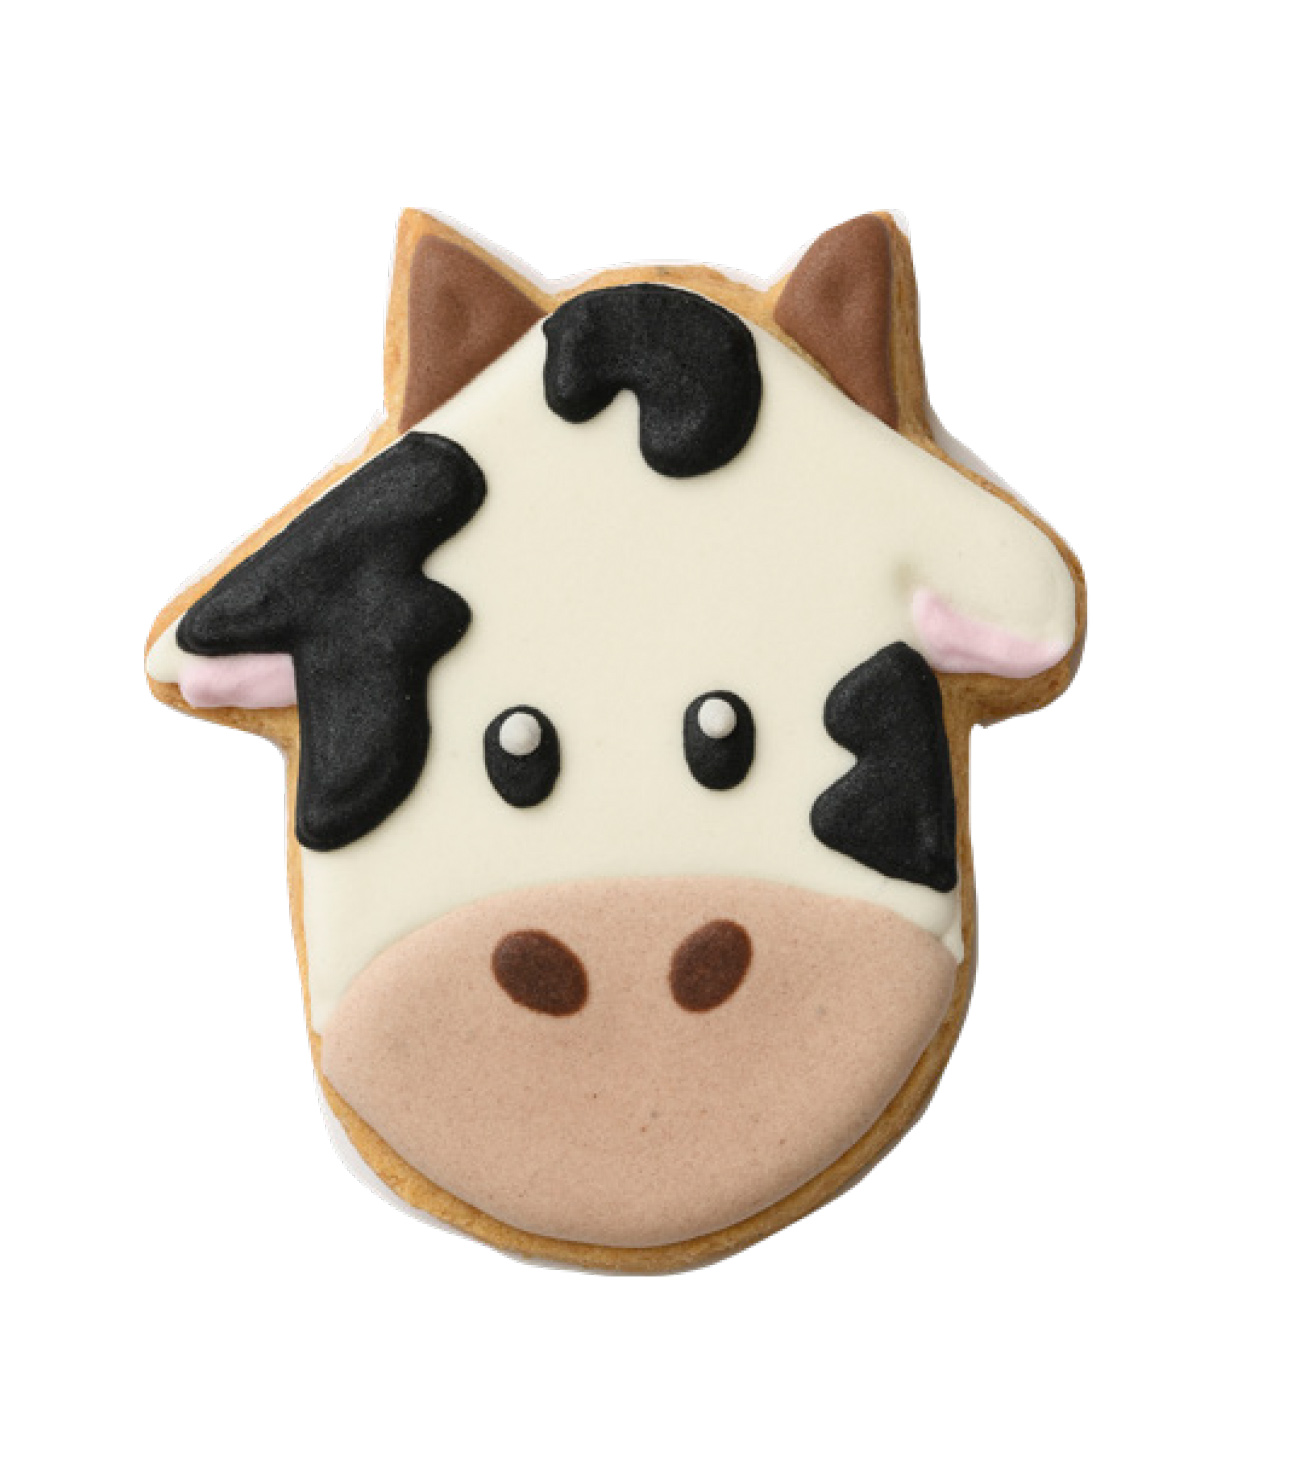 Biscuiti artizanali - Cow Iole, 60g | Mondo di Laura